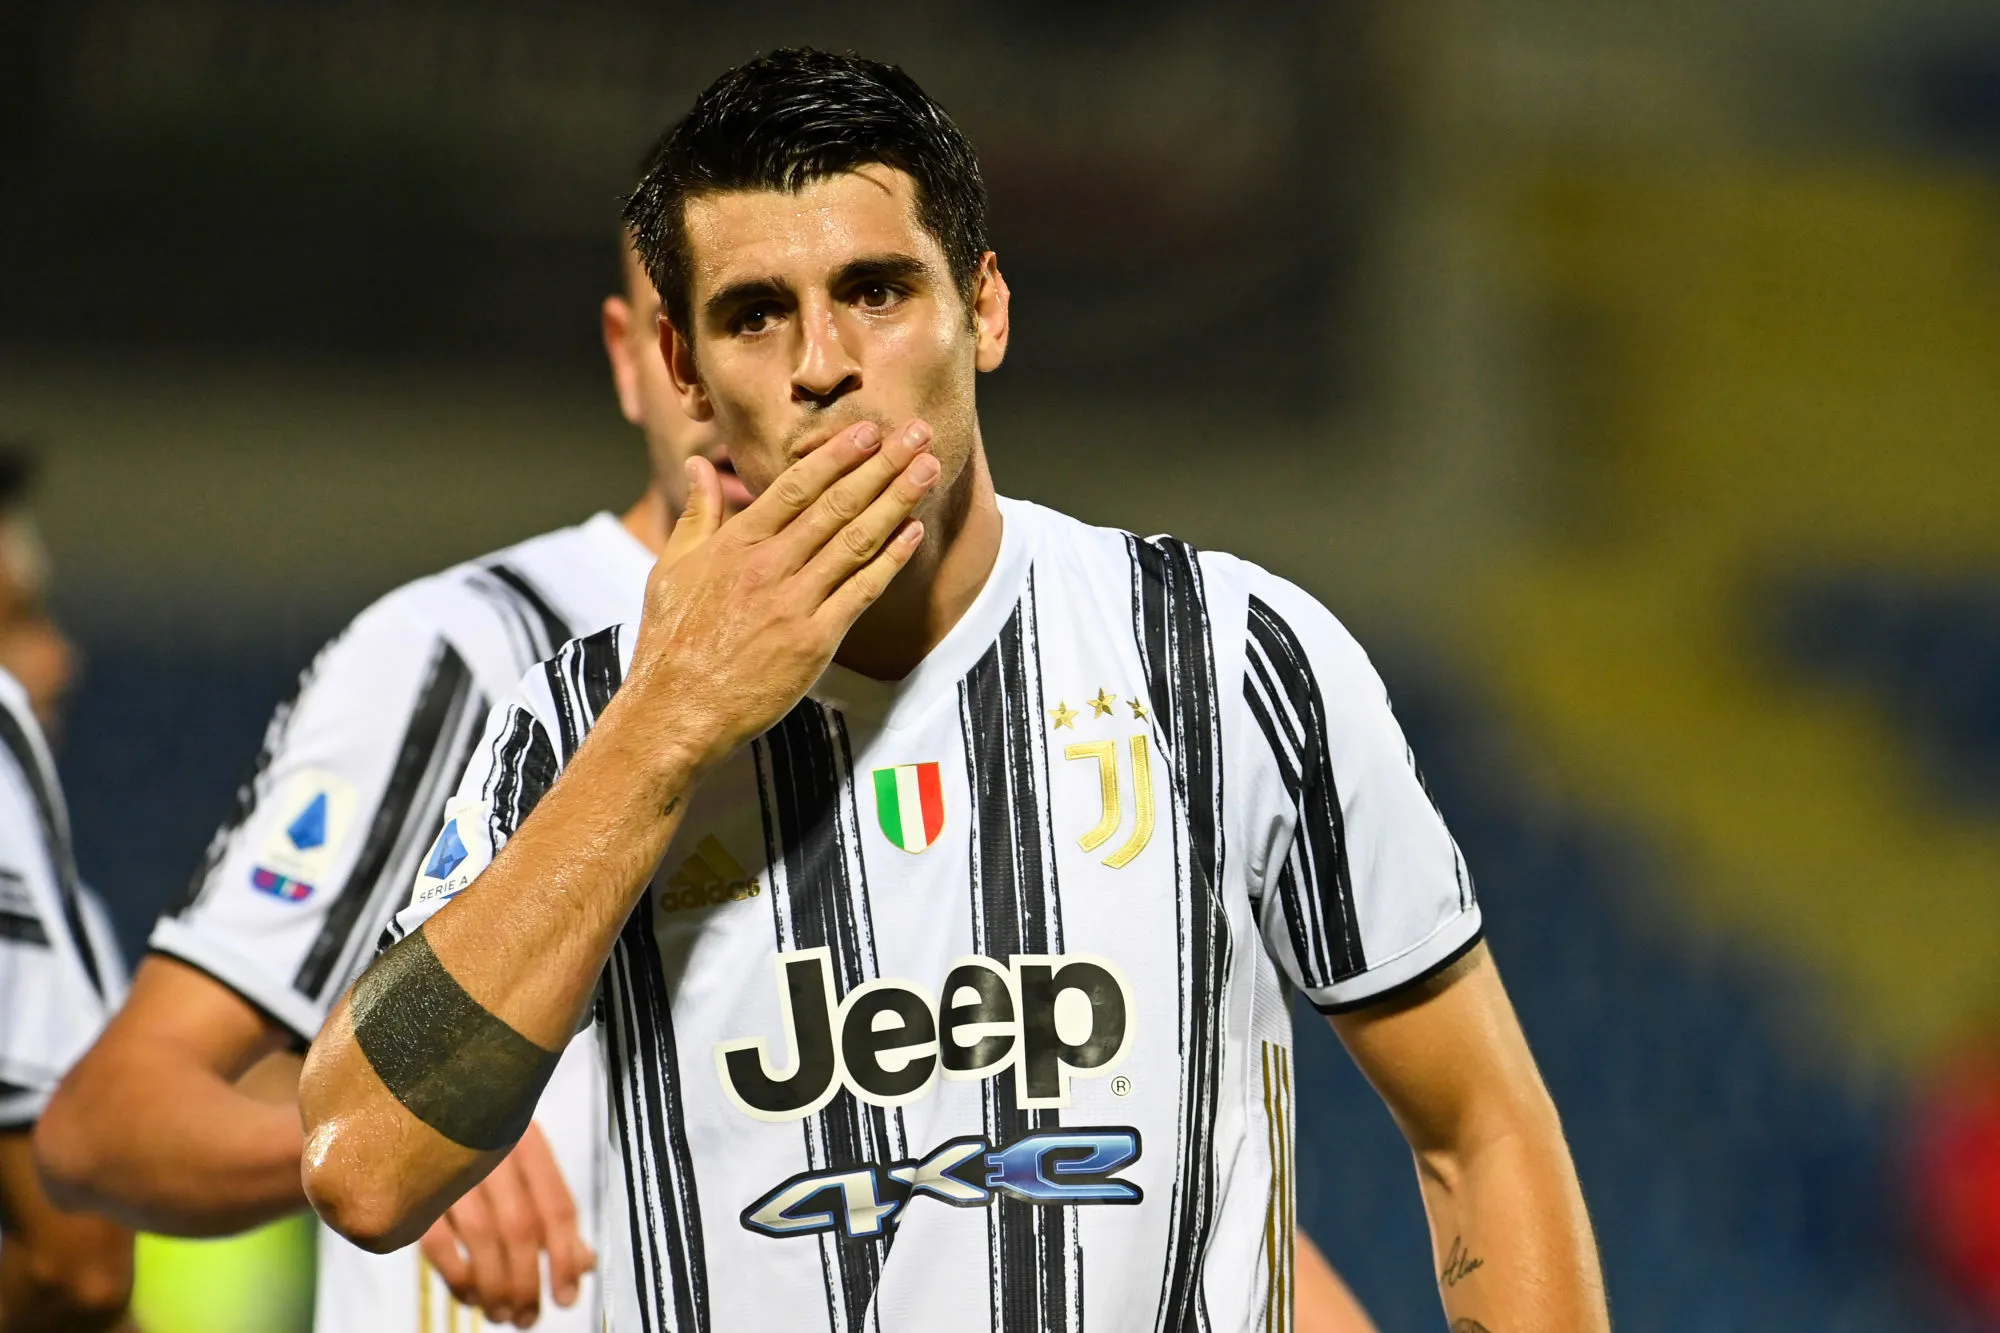 Pronostic Lazio Rome Juventus Turin : Analyse, prono et cotes du match de Serie A